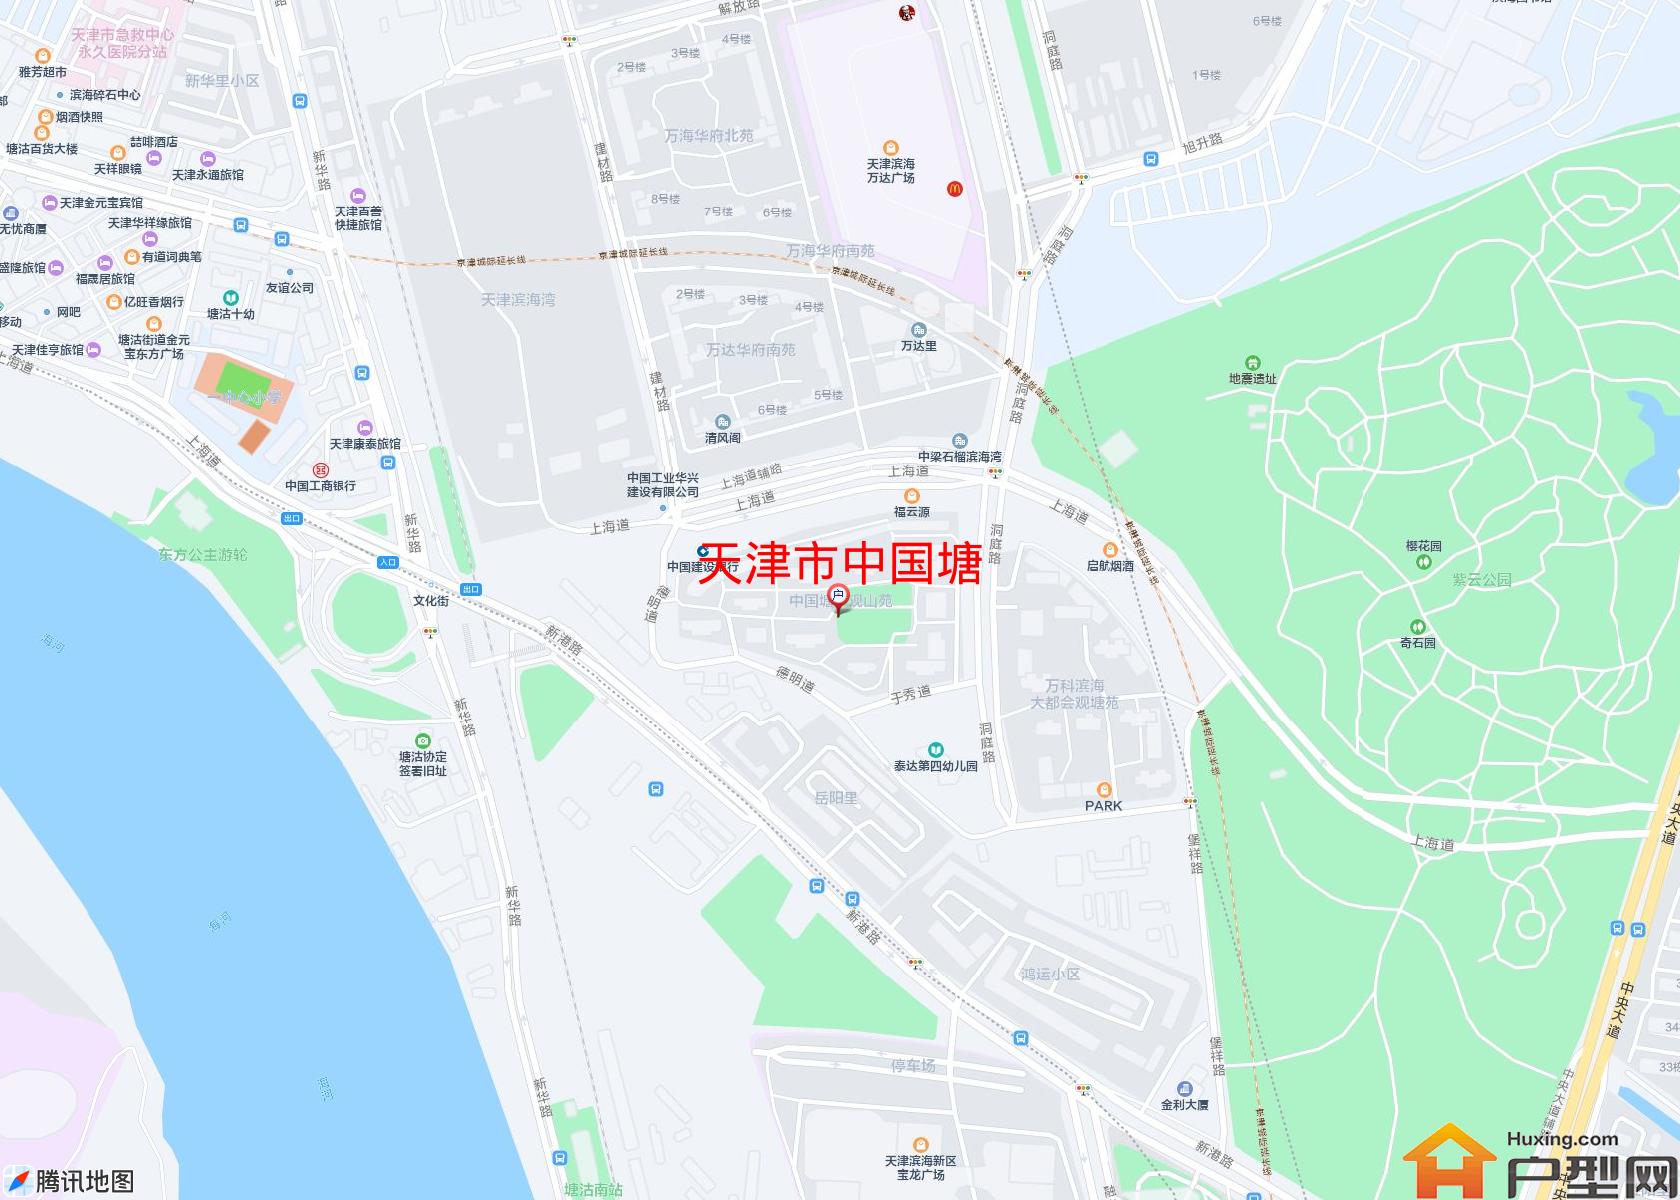 中国塘小区 - 户型网